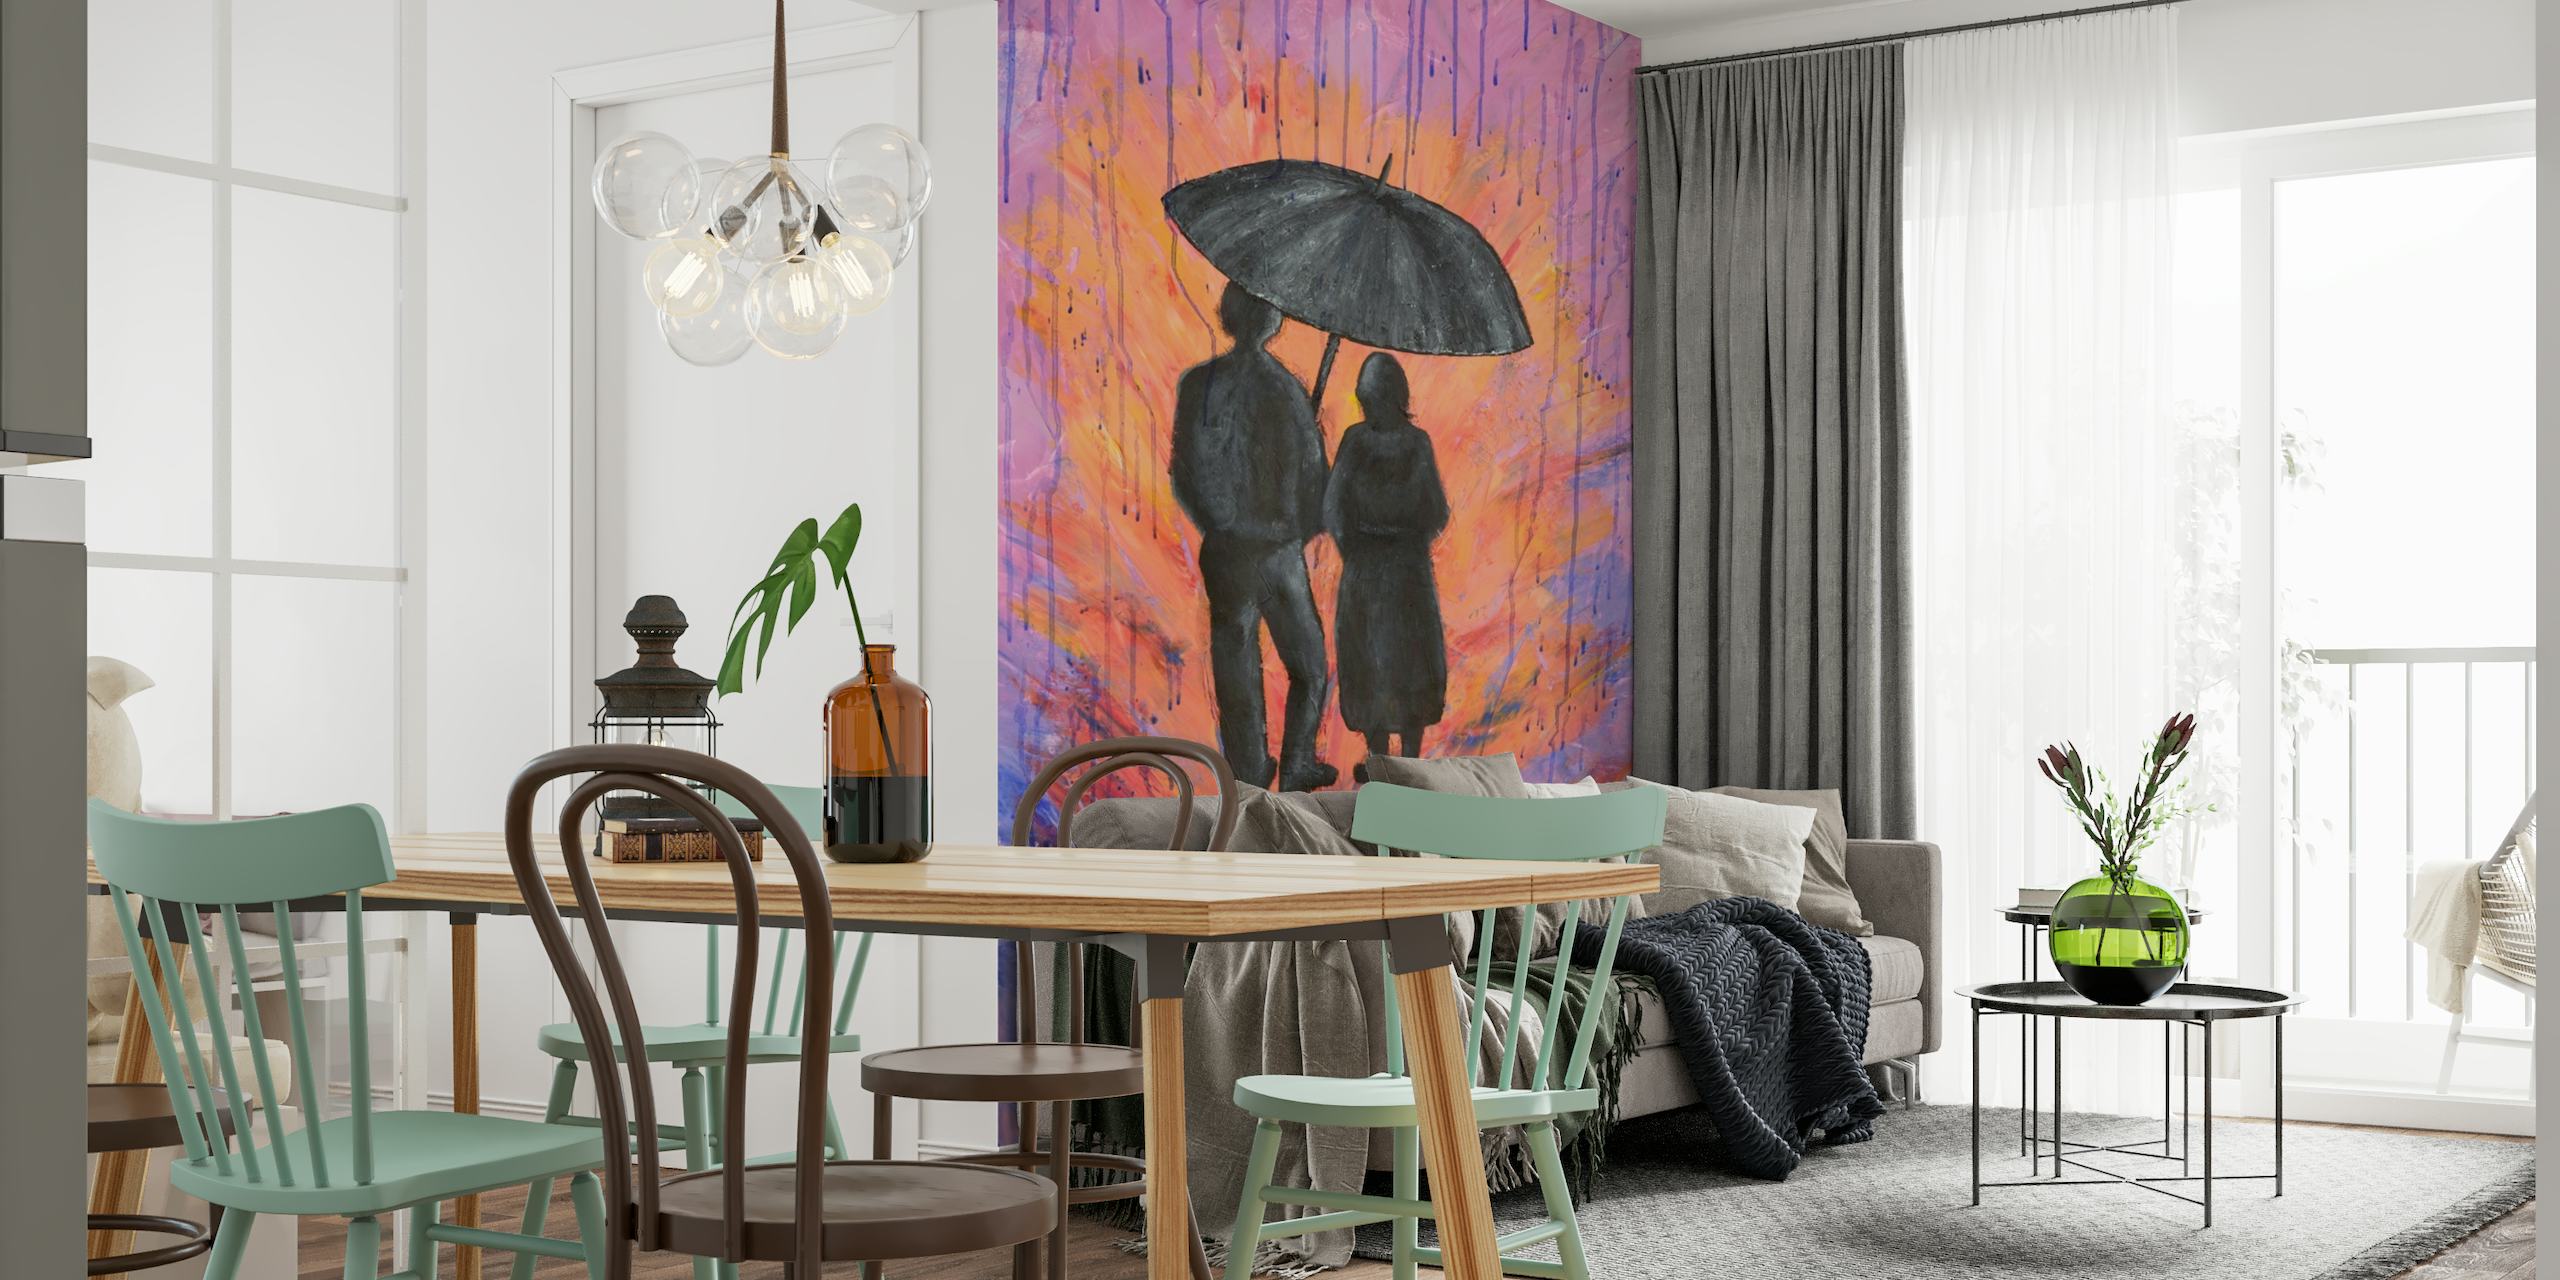 Silhueta de um casal sob um guarda-chuva com fundo de tons de fogo e roxos representando chuva